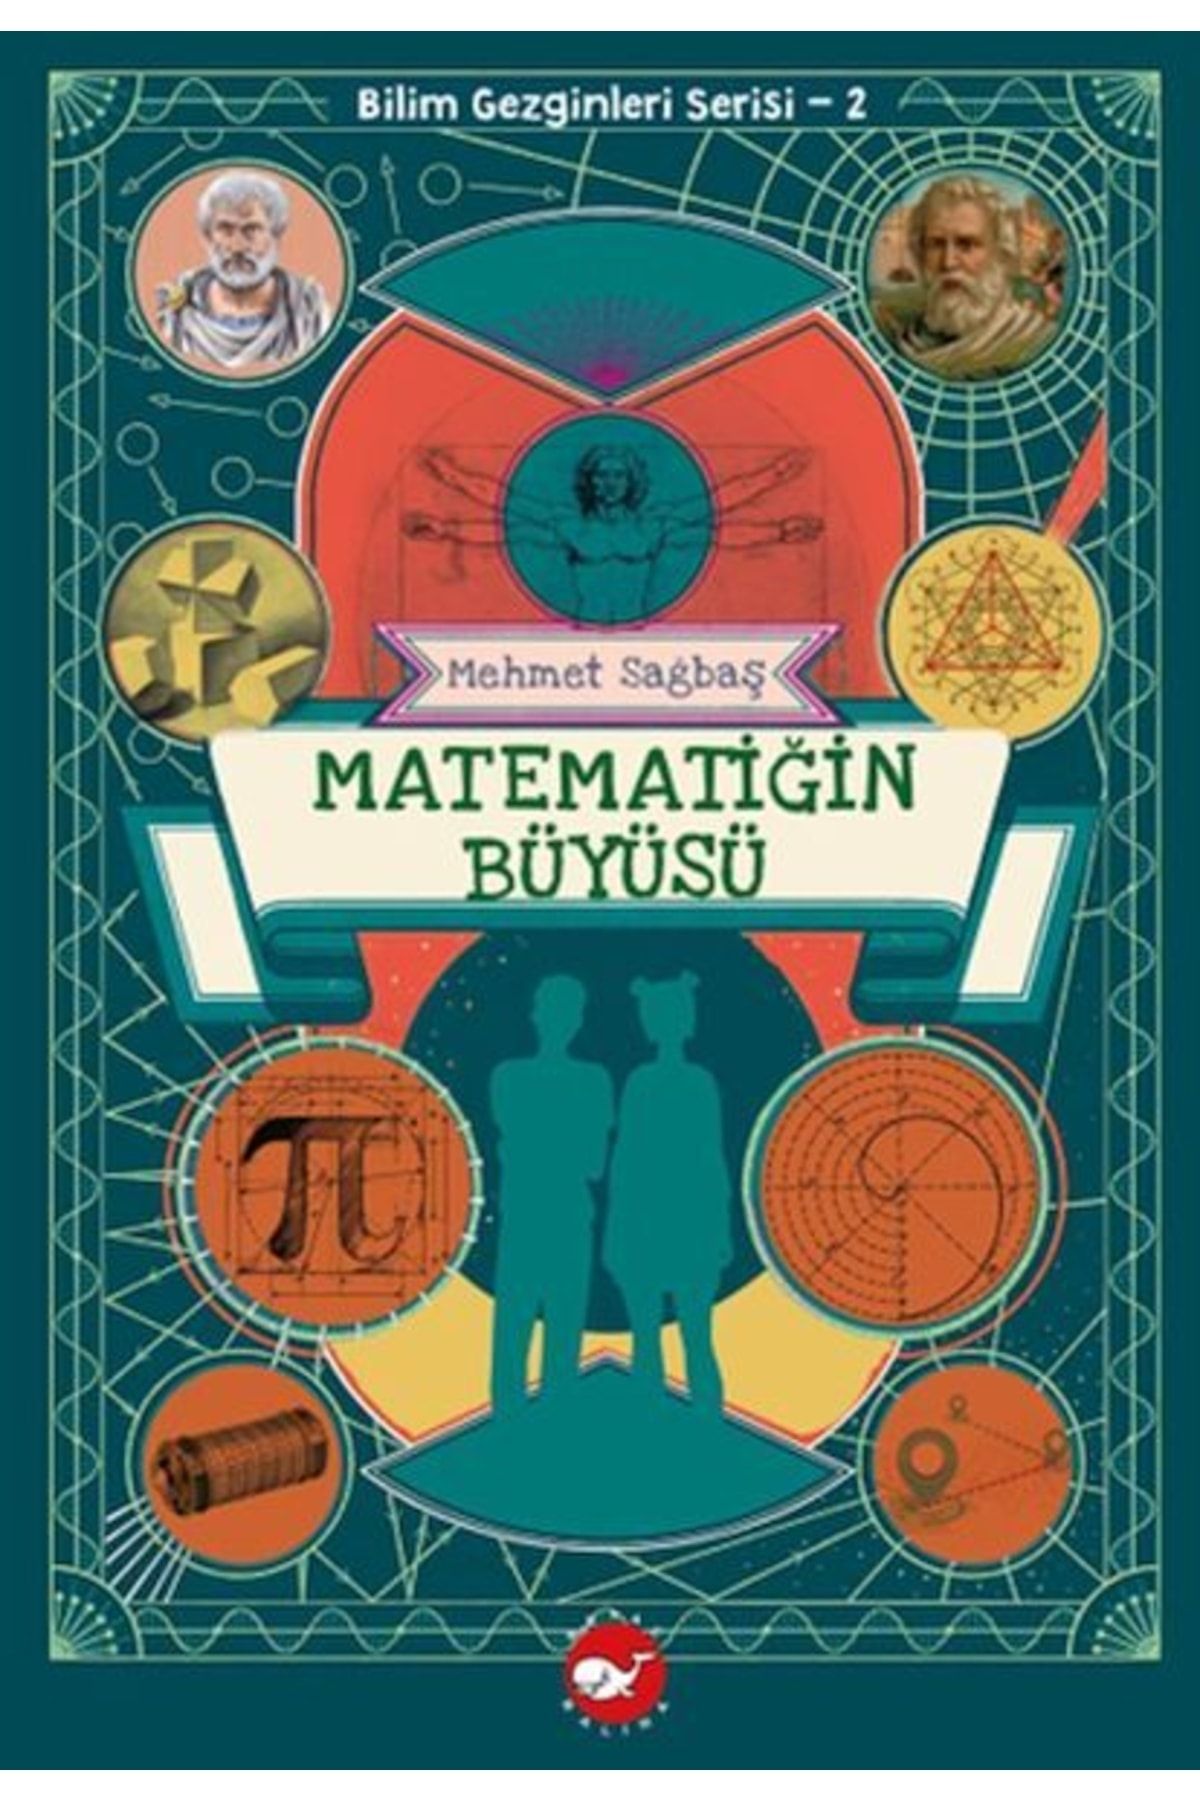 Beyaz Balina Yayınları Bilim Gezginleri Serisi-2 Matematiğin Büyüsü